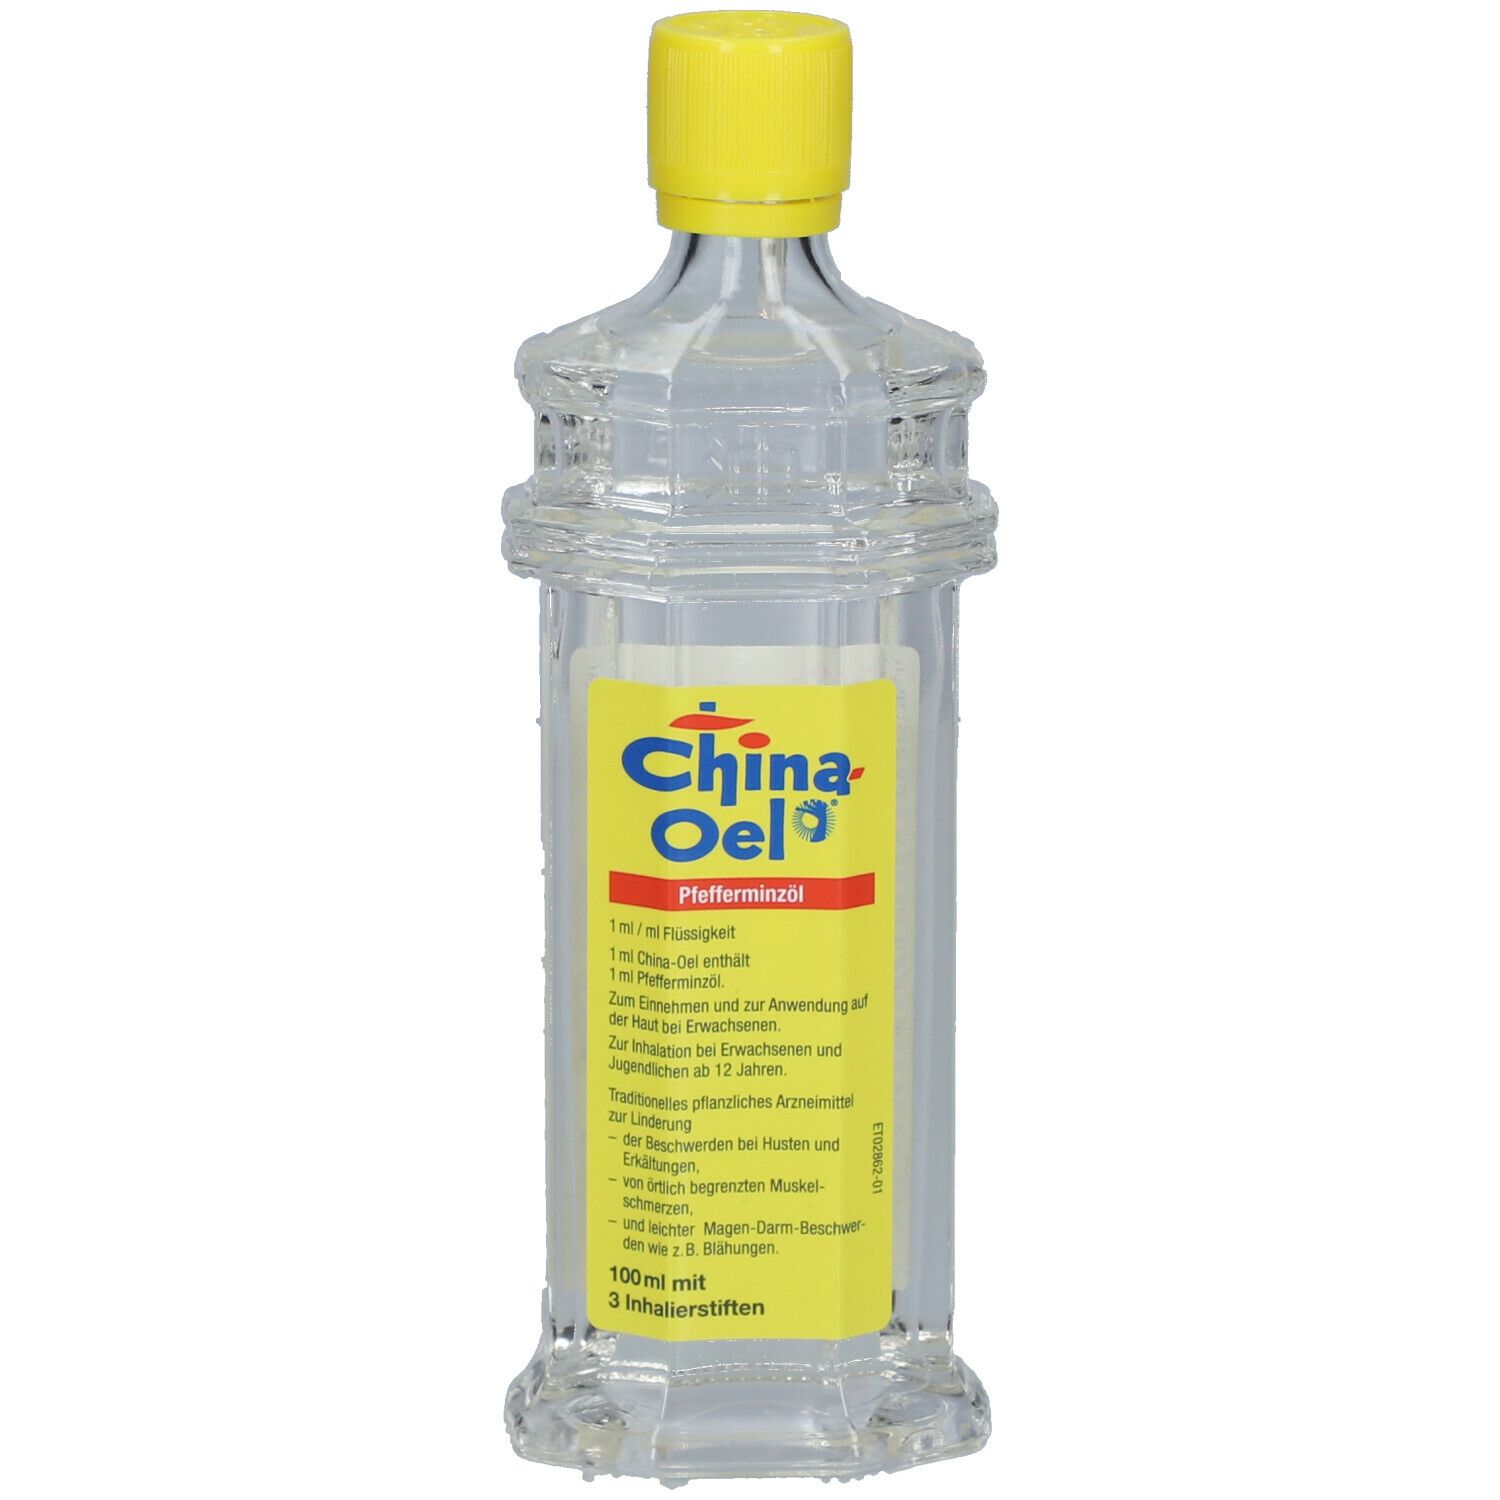 China-Oel® mit 3 Inhalatoren